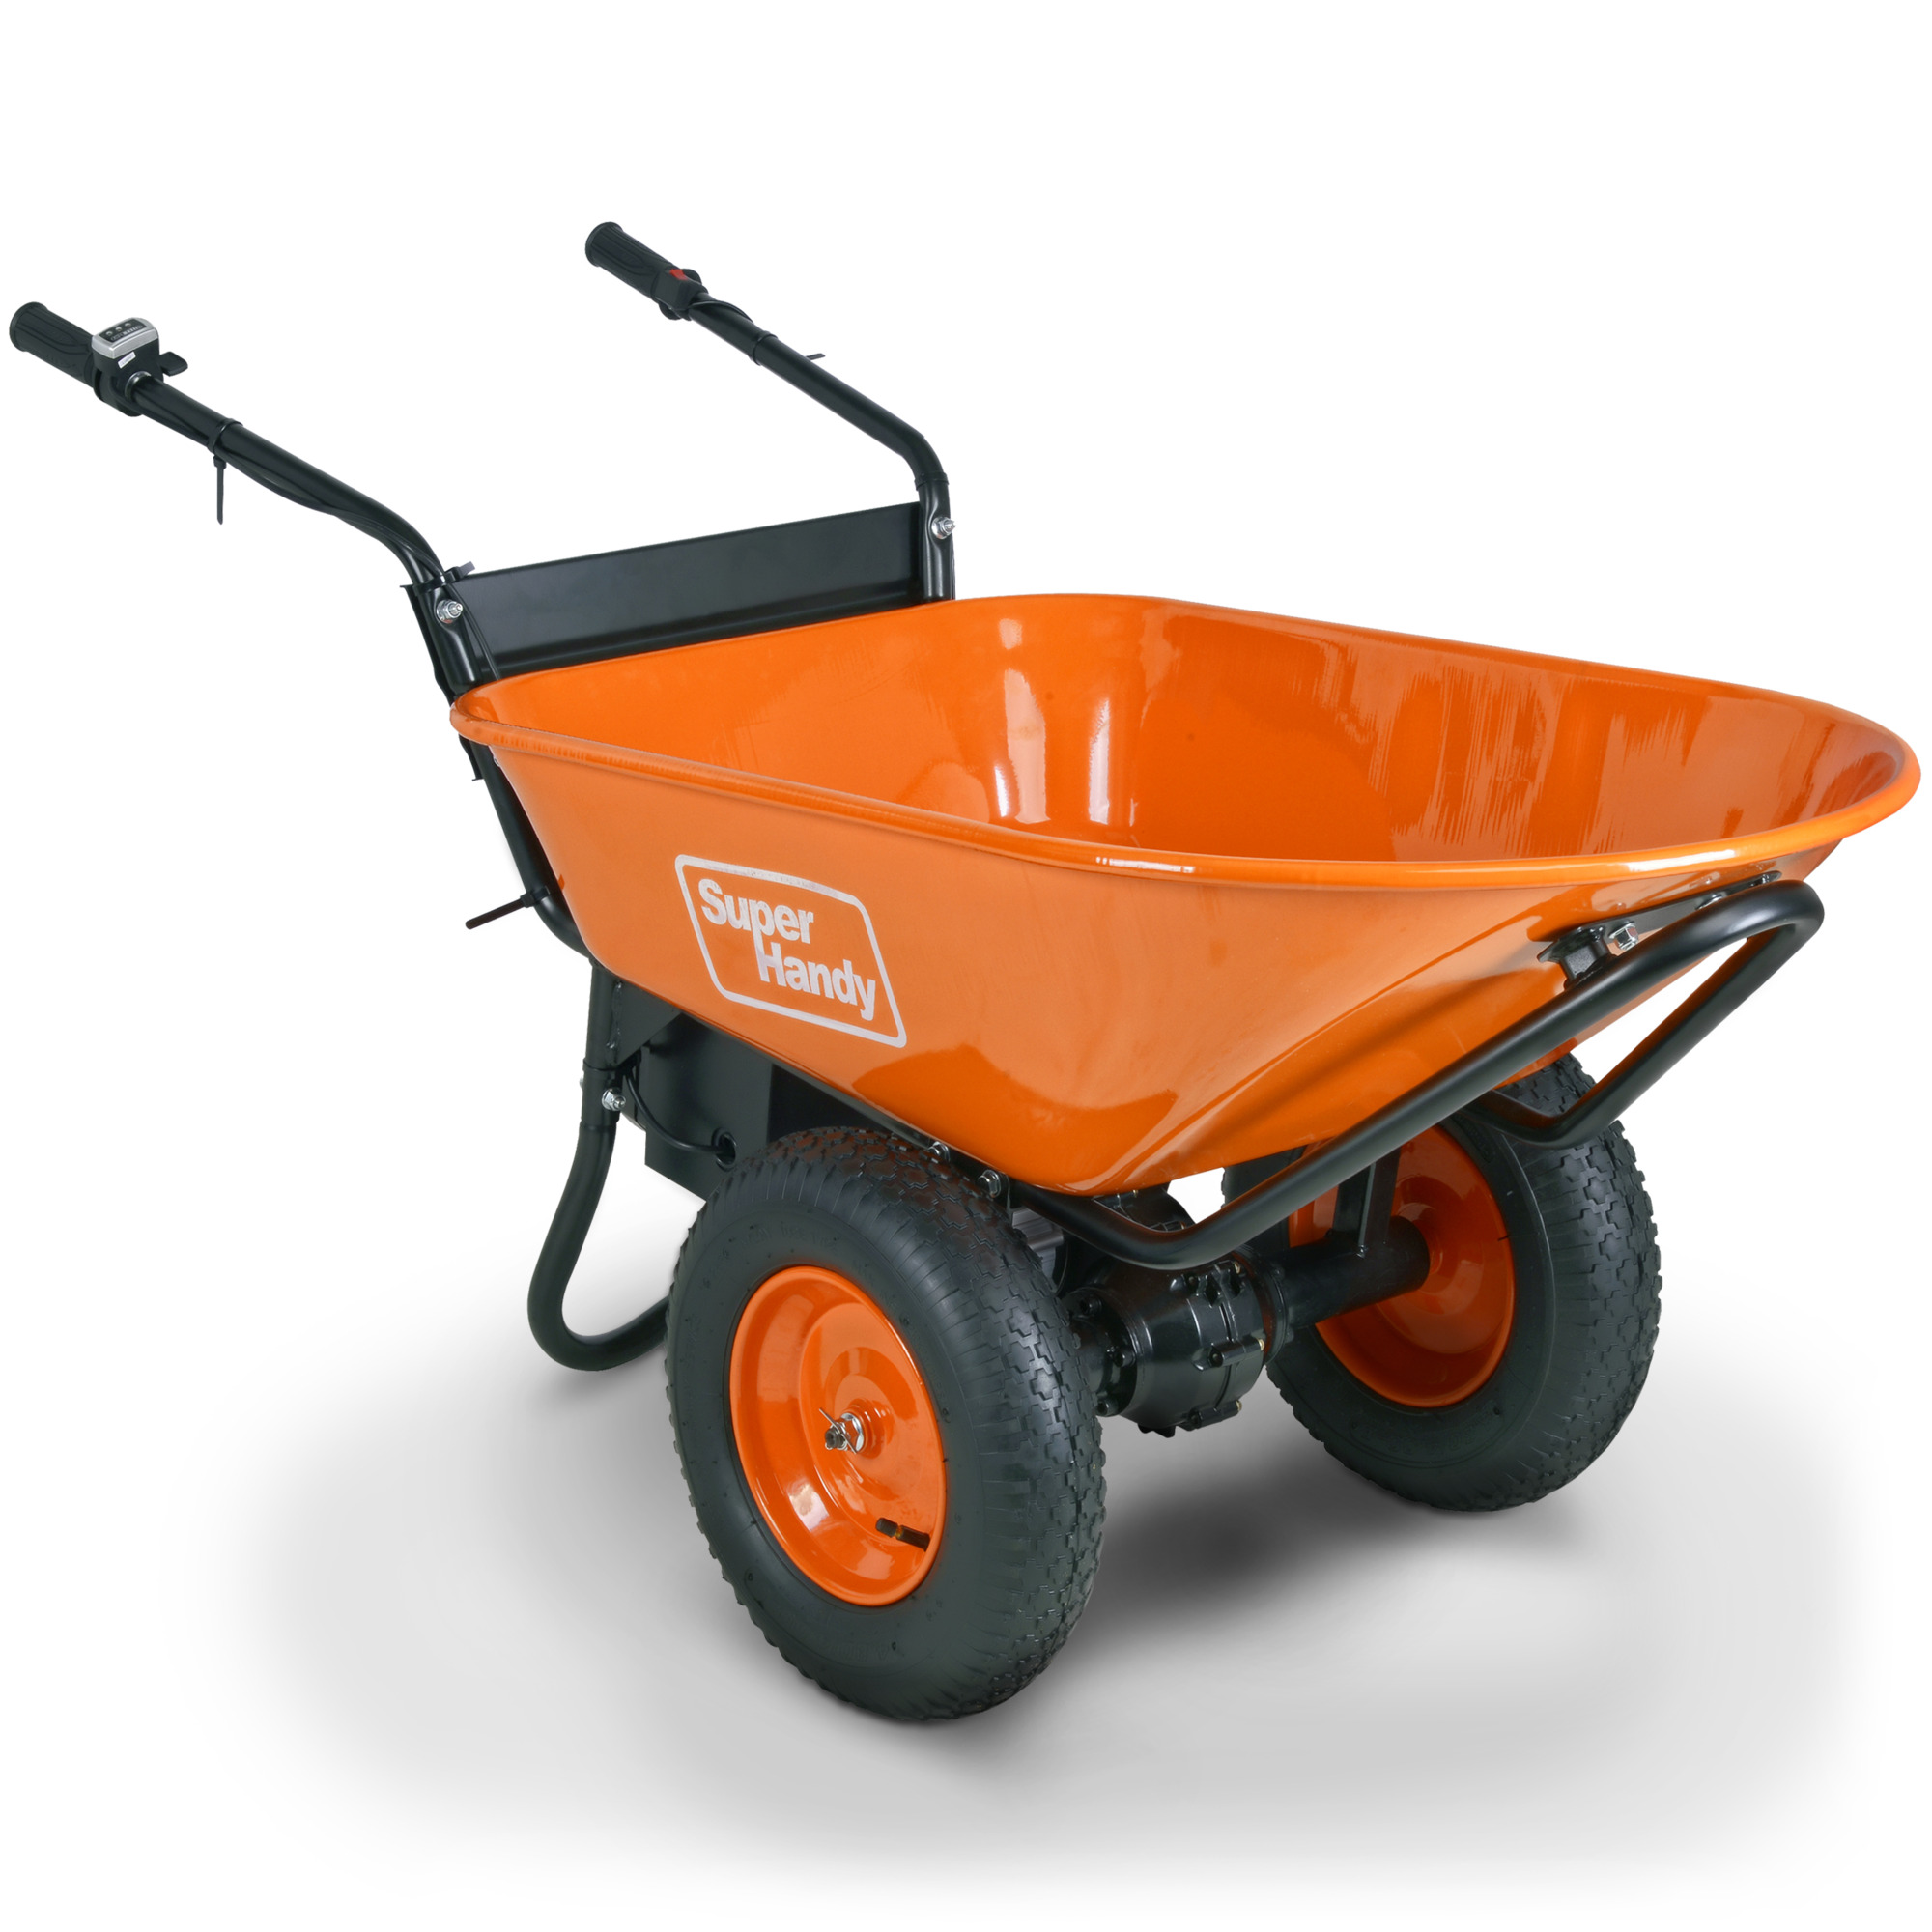 SuperHandy, Electric Wheelbarrow, Load Capacity 330 lb, Model# TRI-GUO057